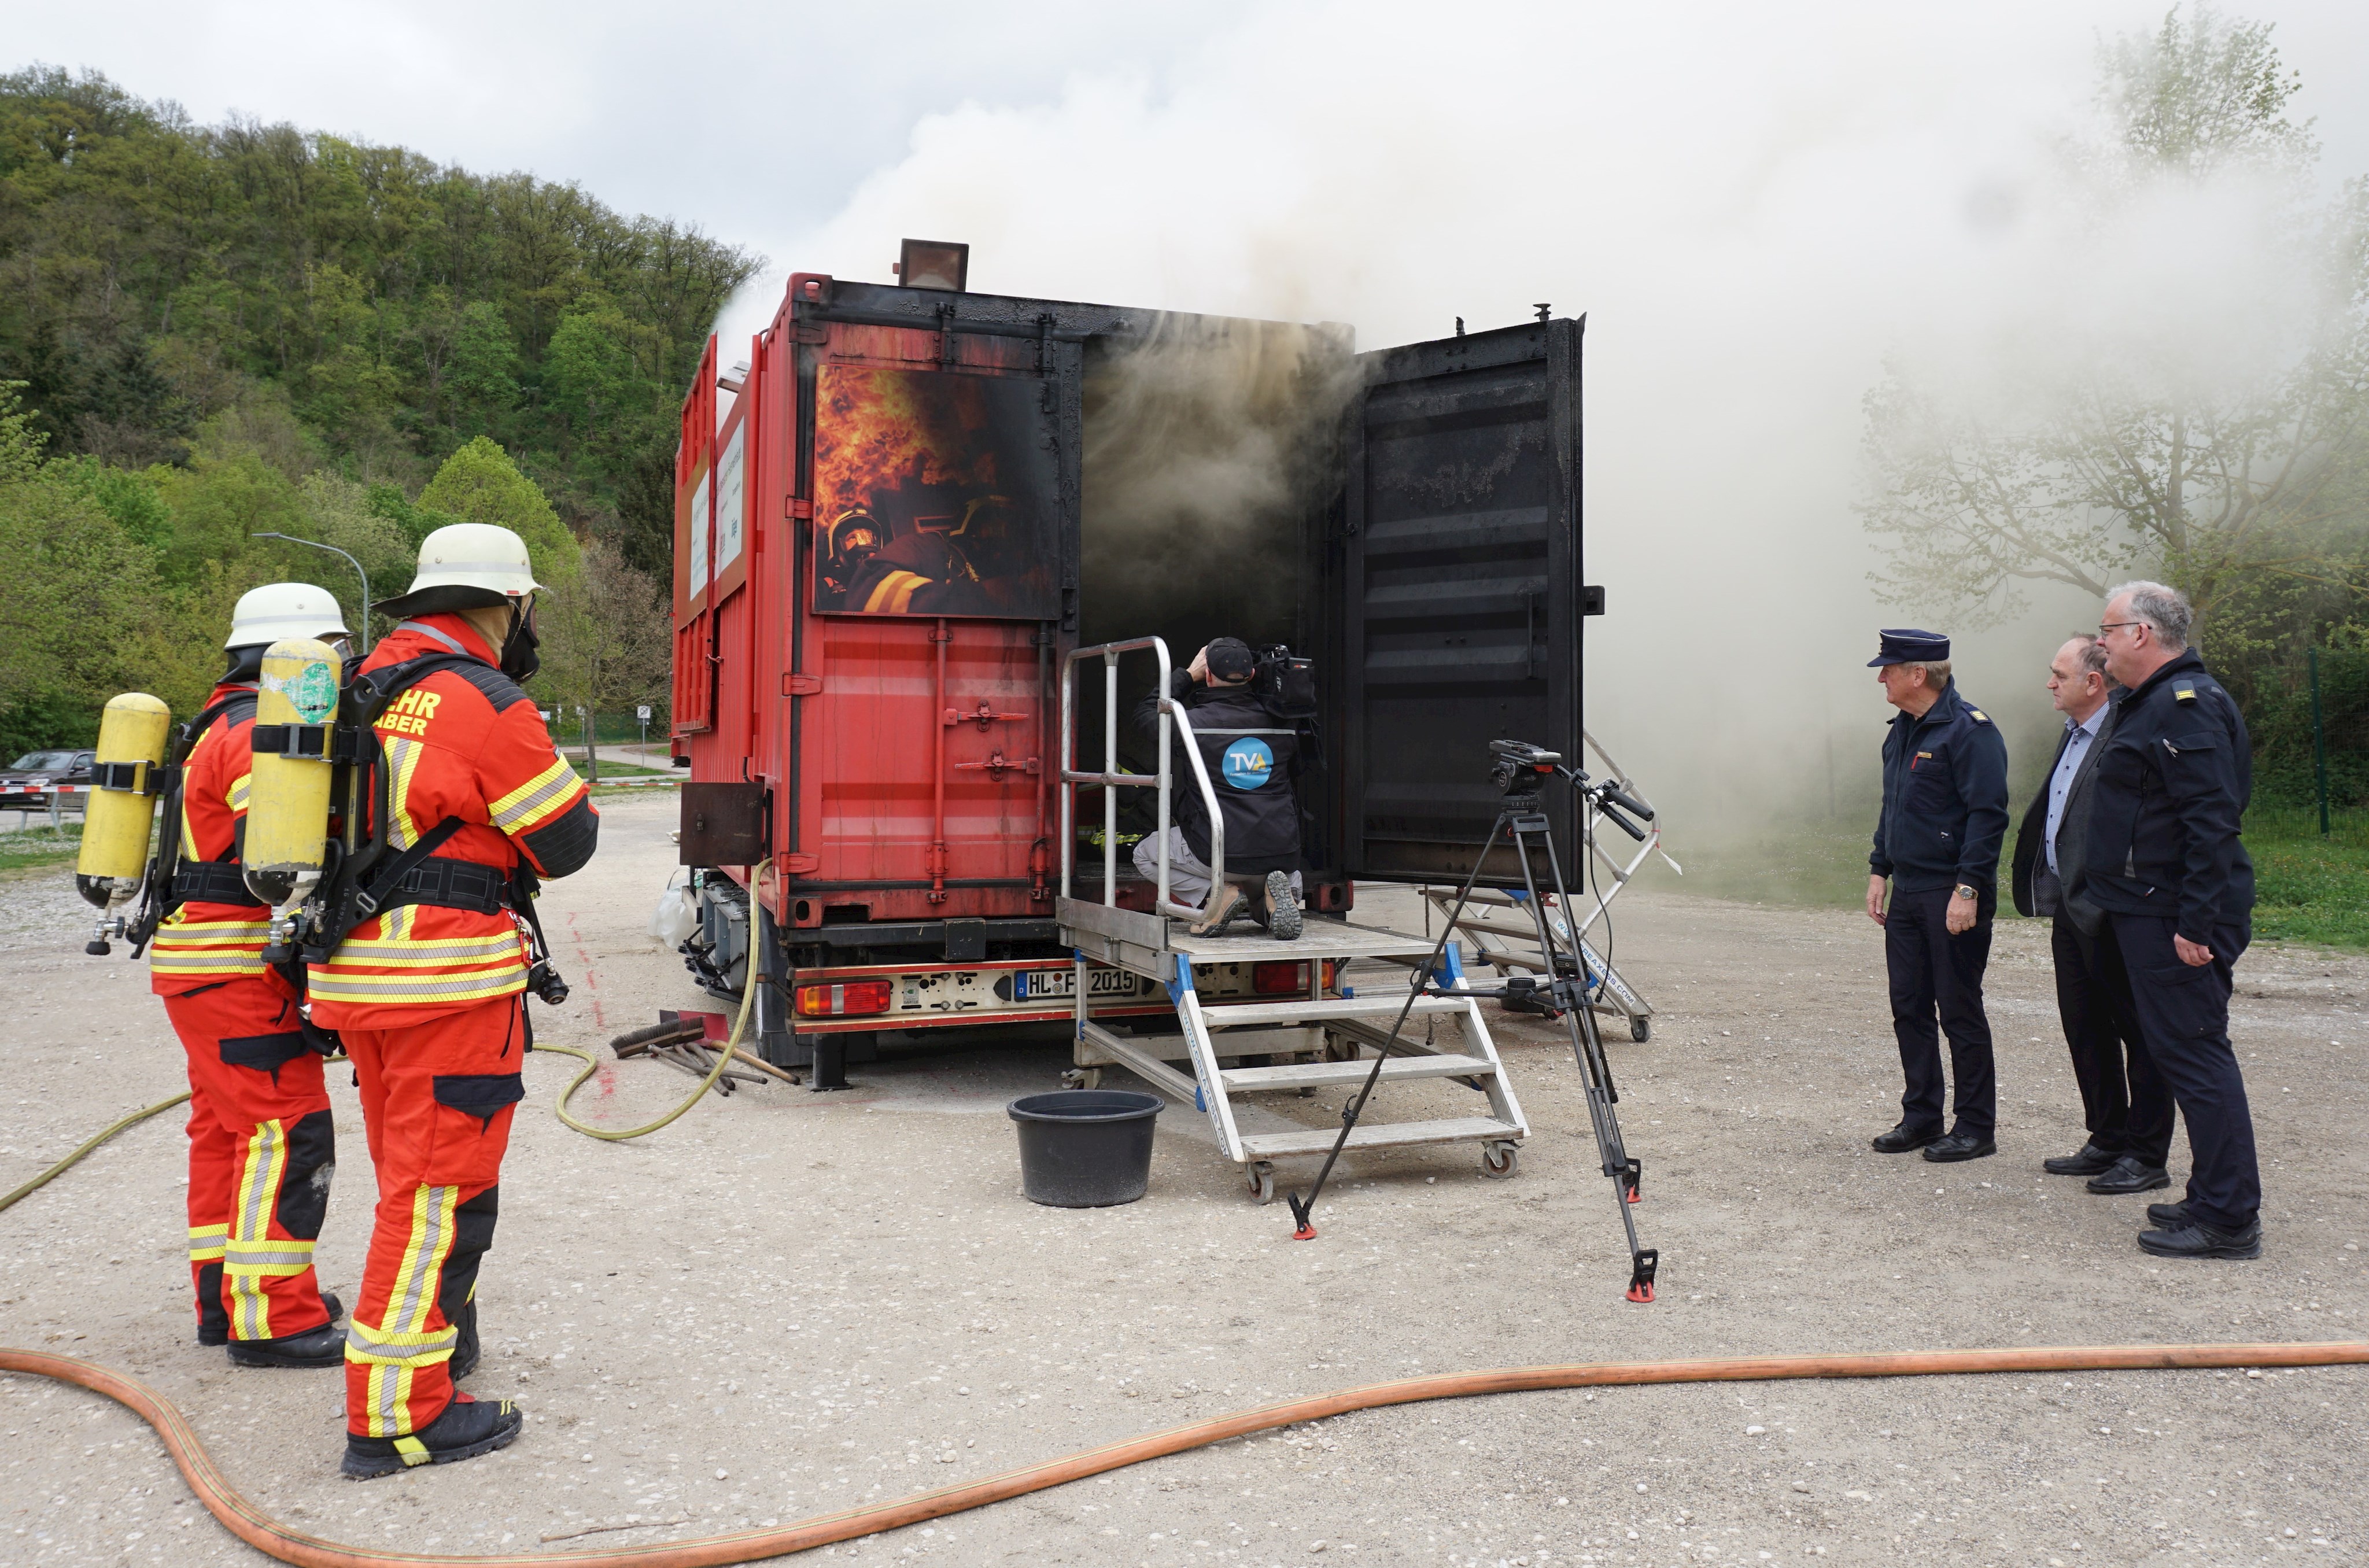  Brandübungscontainer des LFV Bayern waren in KW 25 in Tegernheim